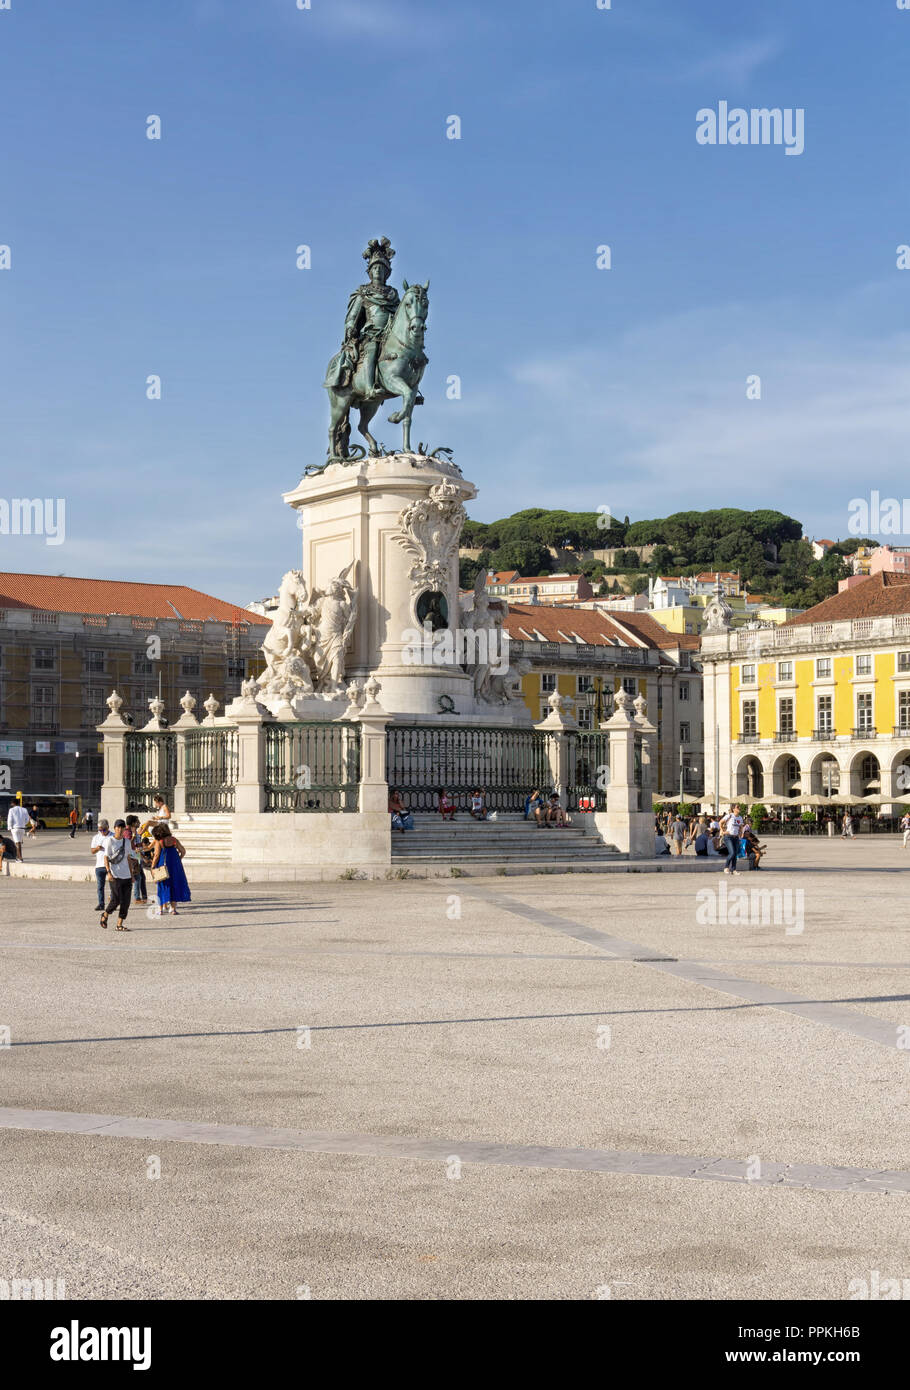 Lisbonne, Portugal - 30 août 2018 : La statue de Jose je dans le commerce Square/Praca do Comercio ; jardin du château de Saint George en arrière-plan Banque D'Images